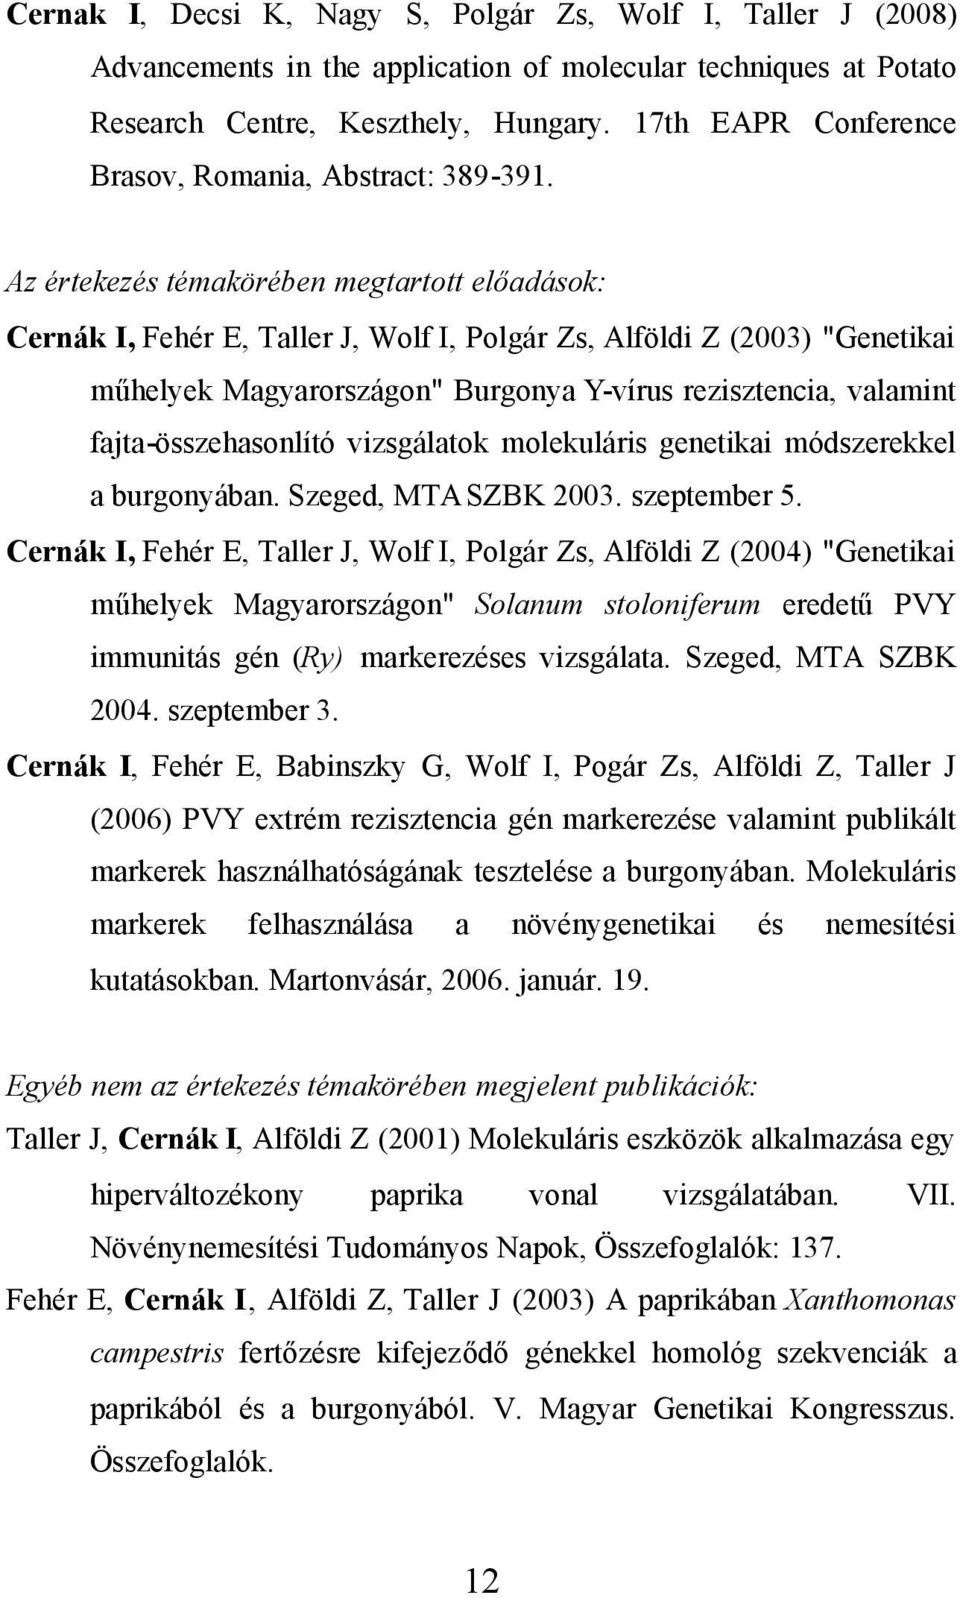 Az értekezés témakörében megtartott előadások: Cernák I, Fehér E, Taller J, Wolf I, Polgár Zs, Alföldi Z (2003) "Genetikai műhelyek Magyarországon" Burgonya Y-vírus rezisztencia, valamint